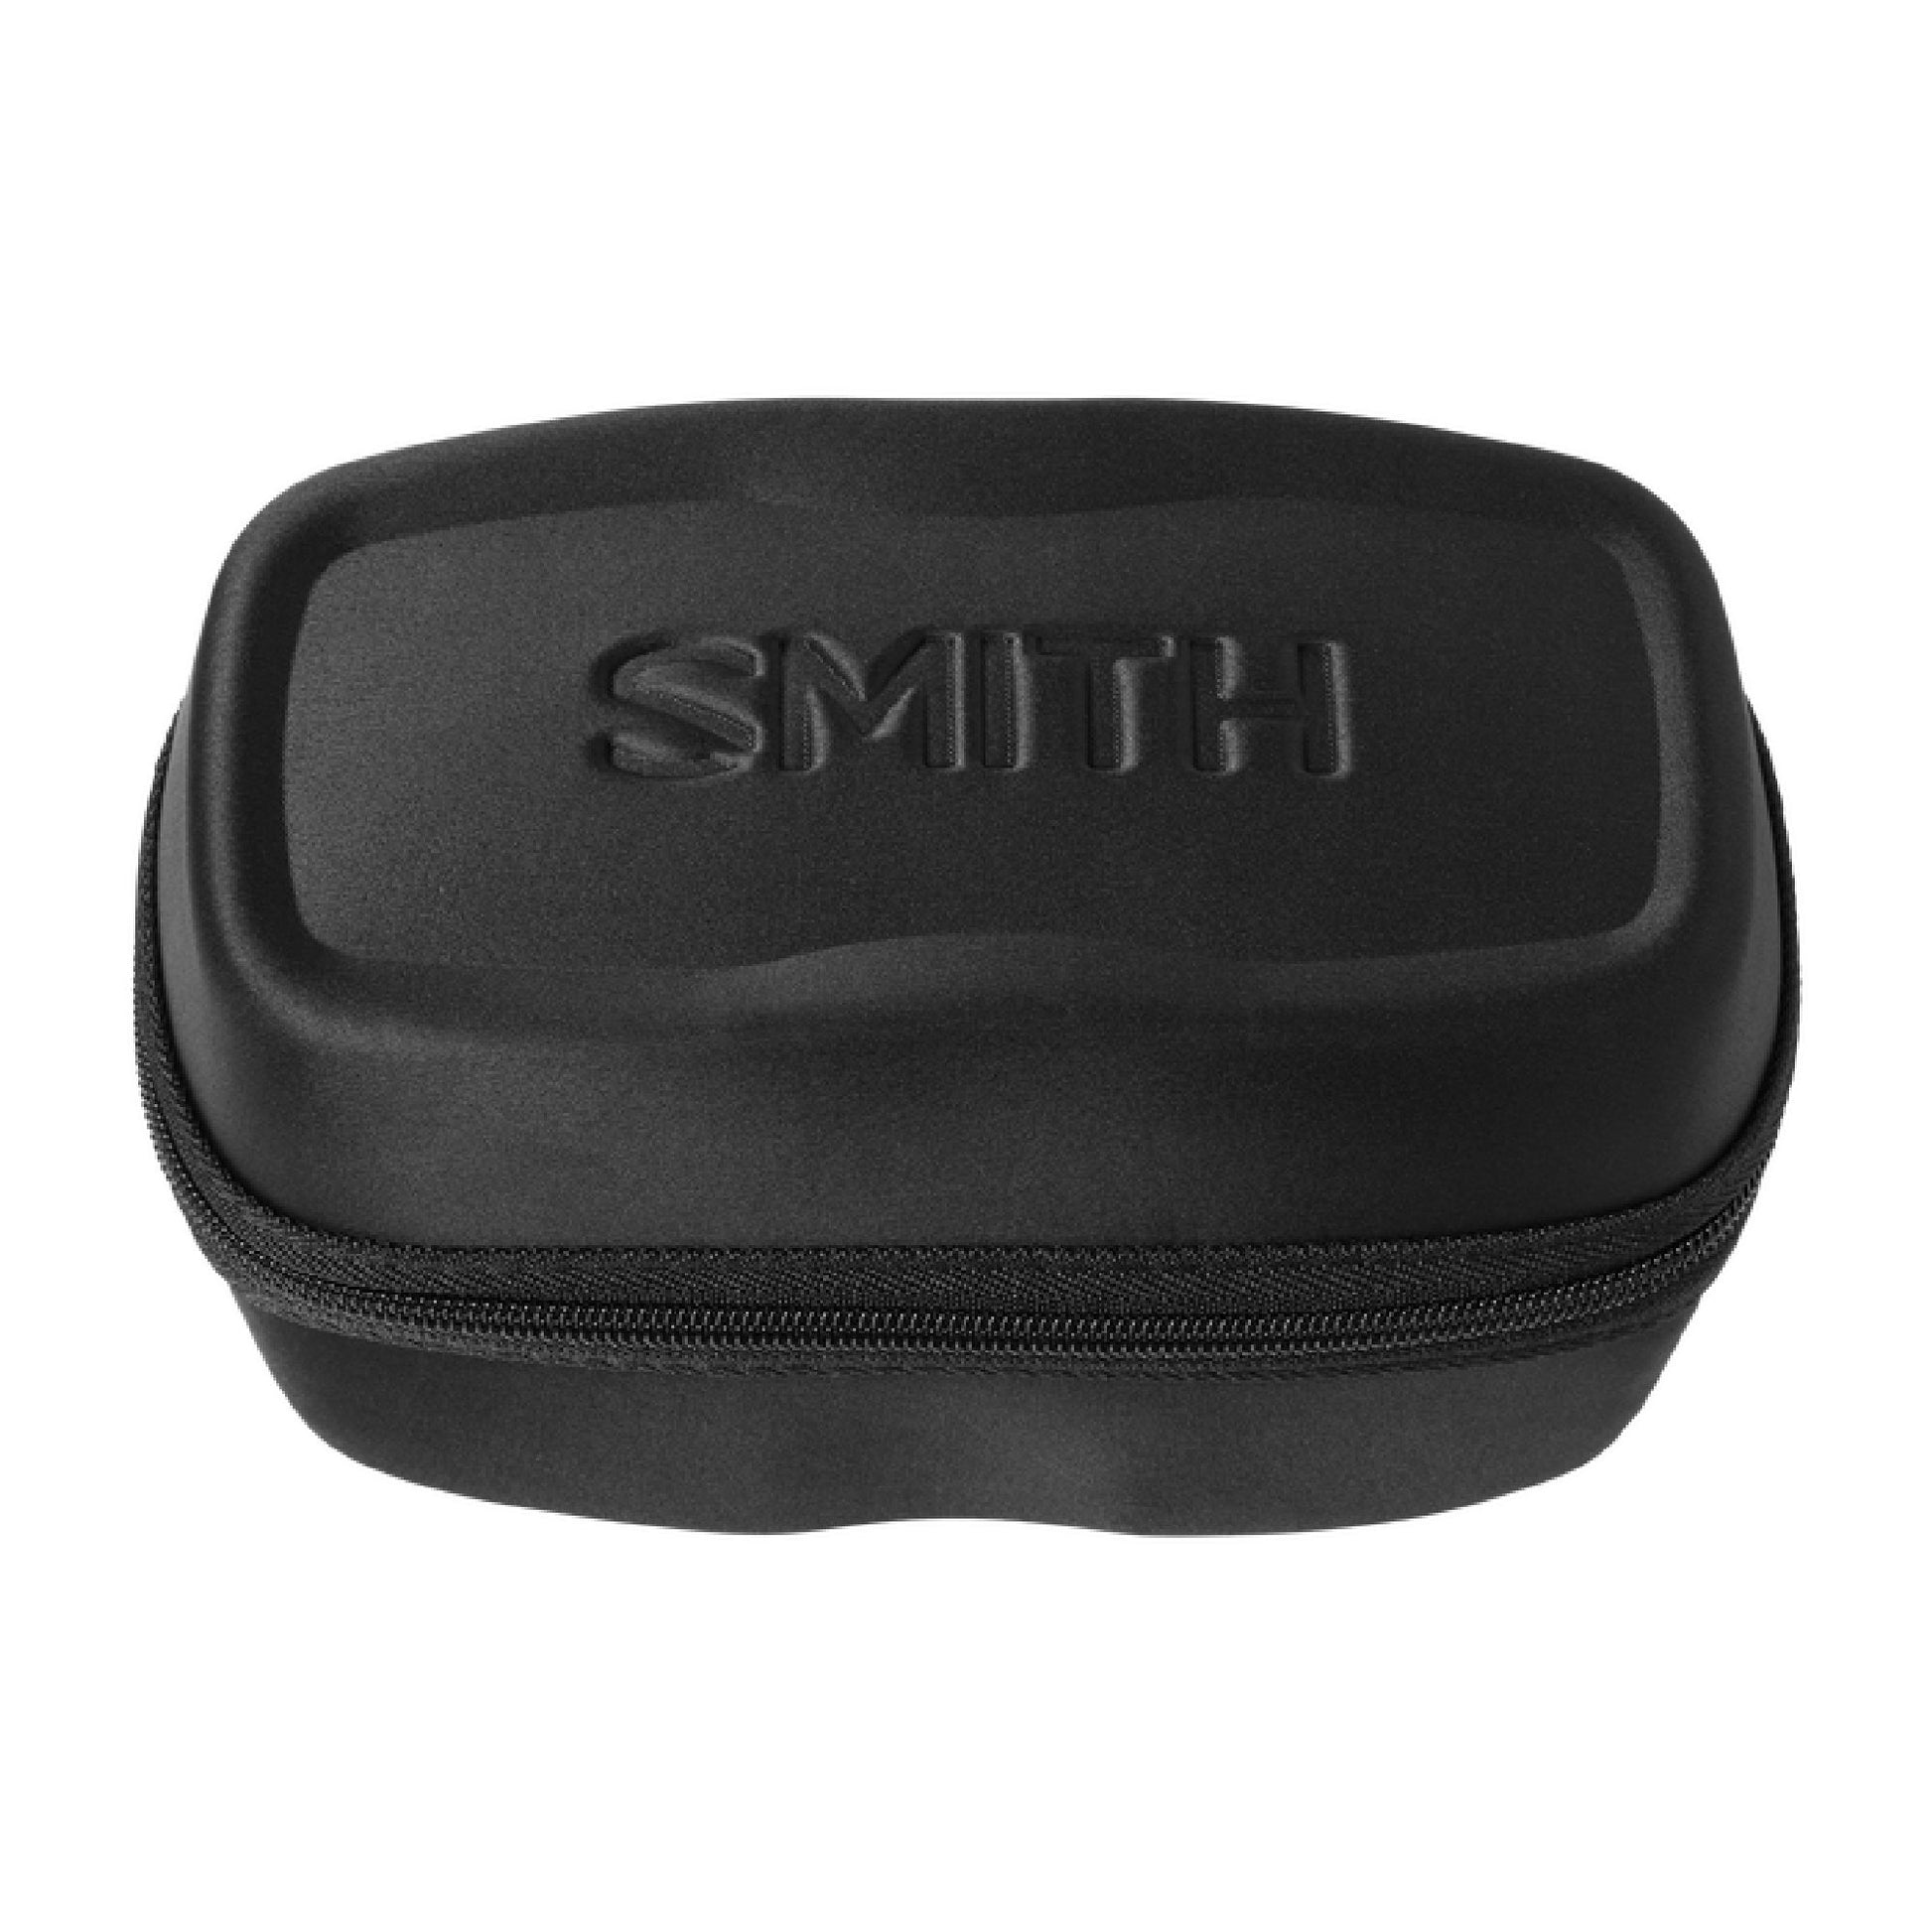 Smith 4D MAG Snow Goggle Gold Bar / ChromaPop Sun Black Snow Goggles